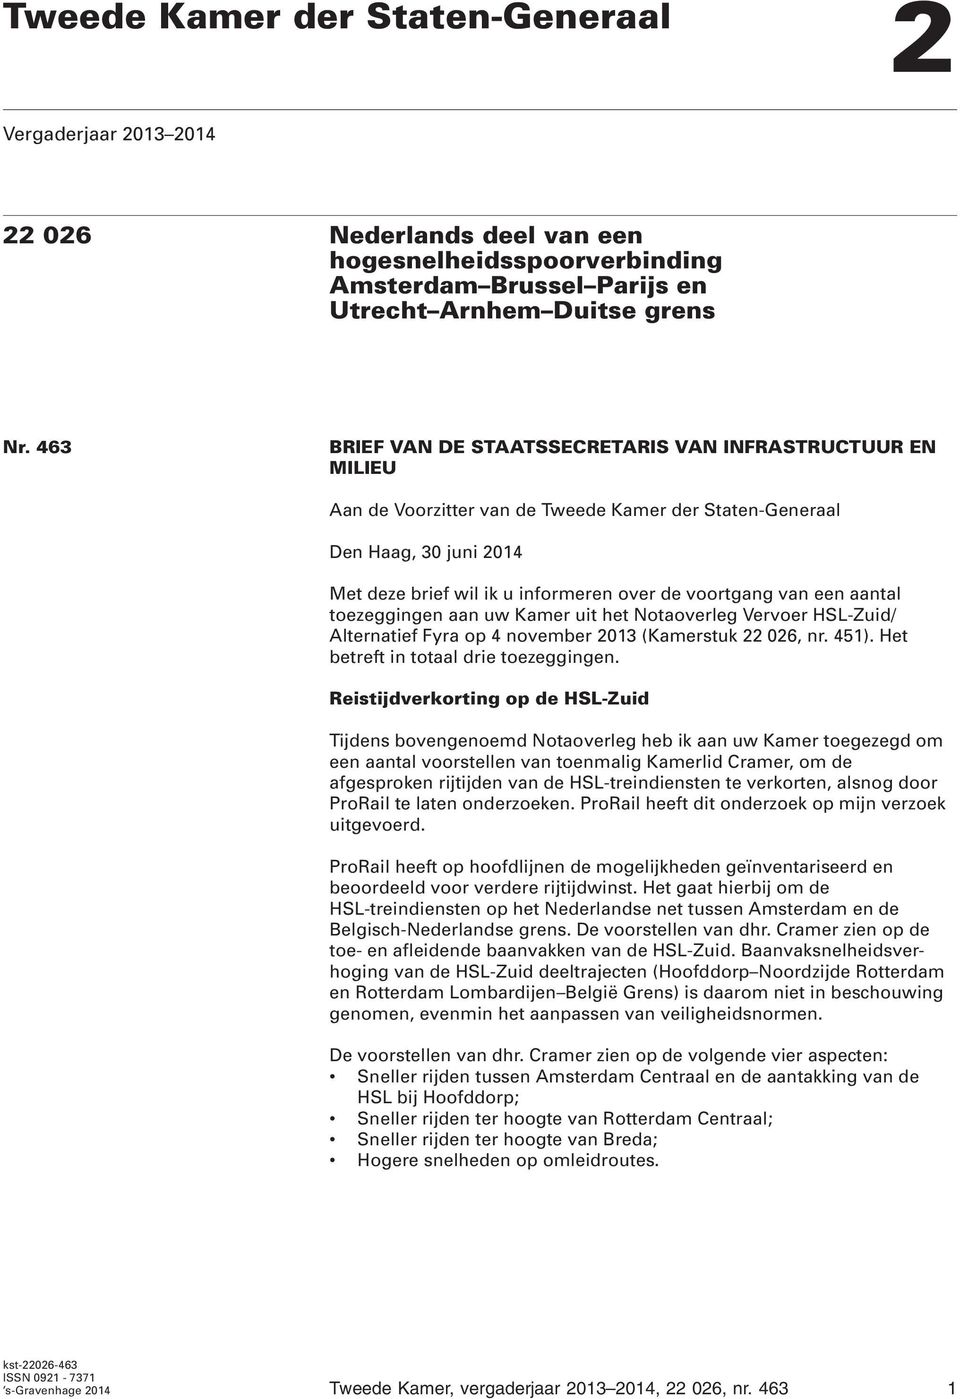 van een aantal toezeggingen aan uw Kamer uit het Notaoverleg Vervoer HSL-Zuid/ Alternatief Fyra op 4 november 2013 (Kamerstuk 22 026, nr. 451). Het betreft in totaal drie toezeggingen.